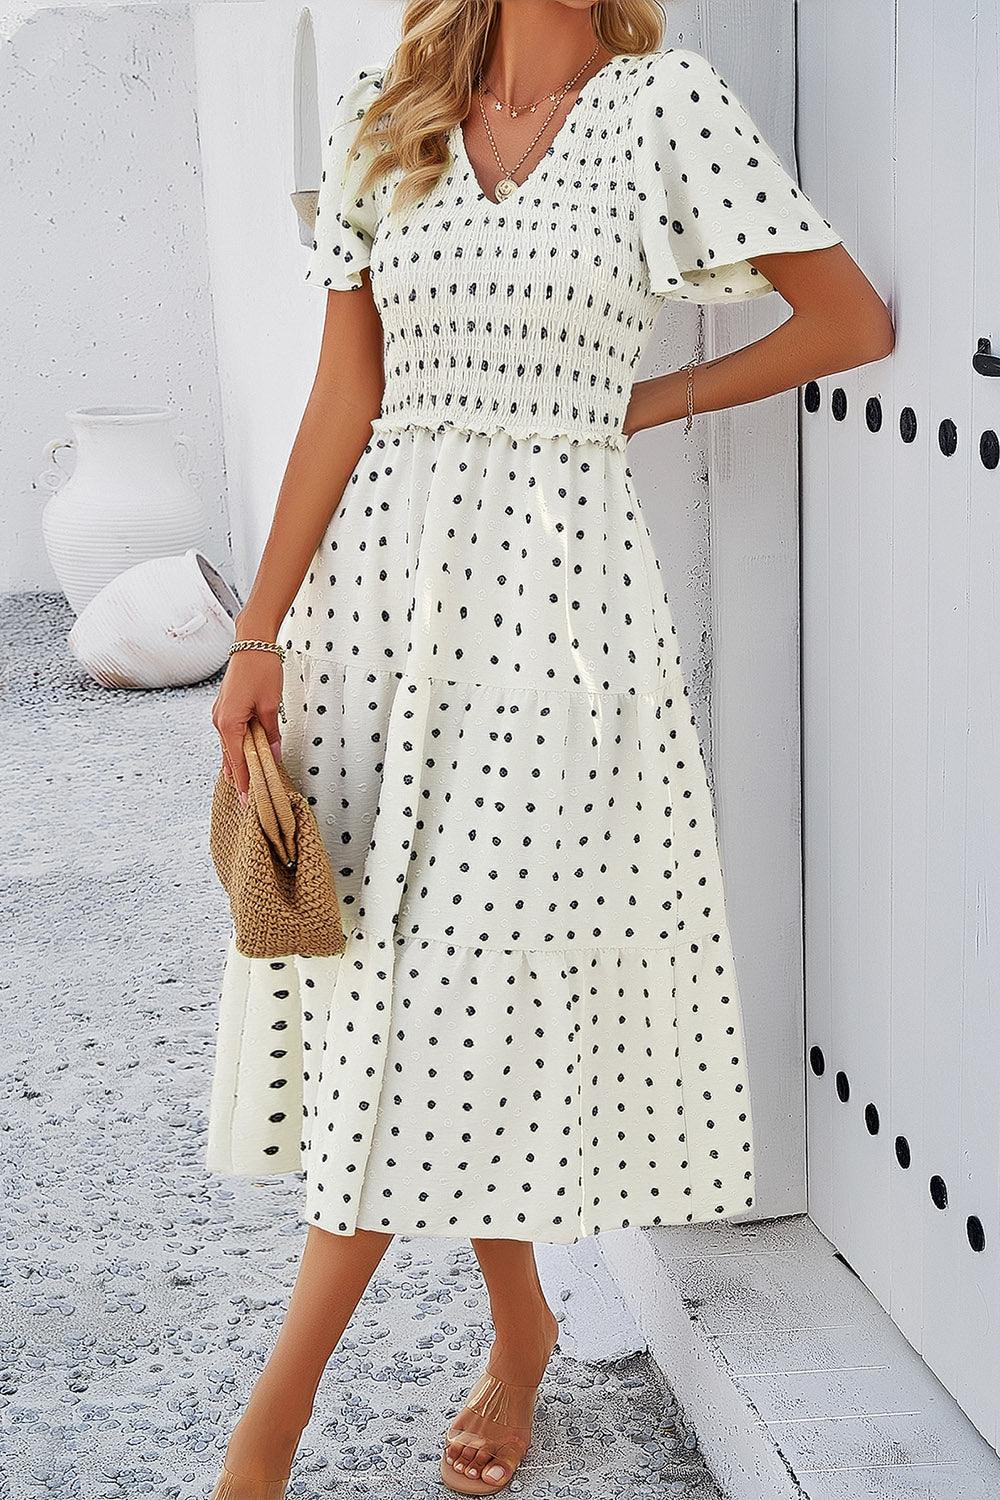 a woman wearing a white polka dot dress